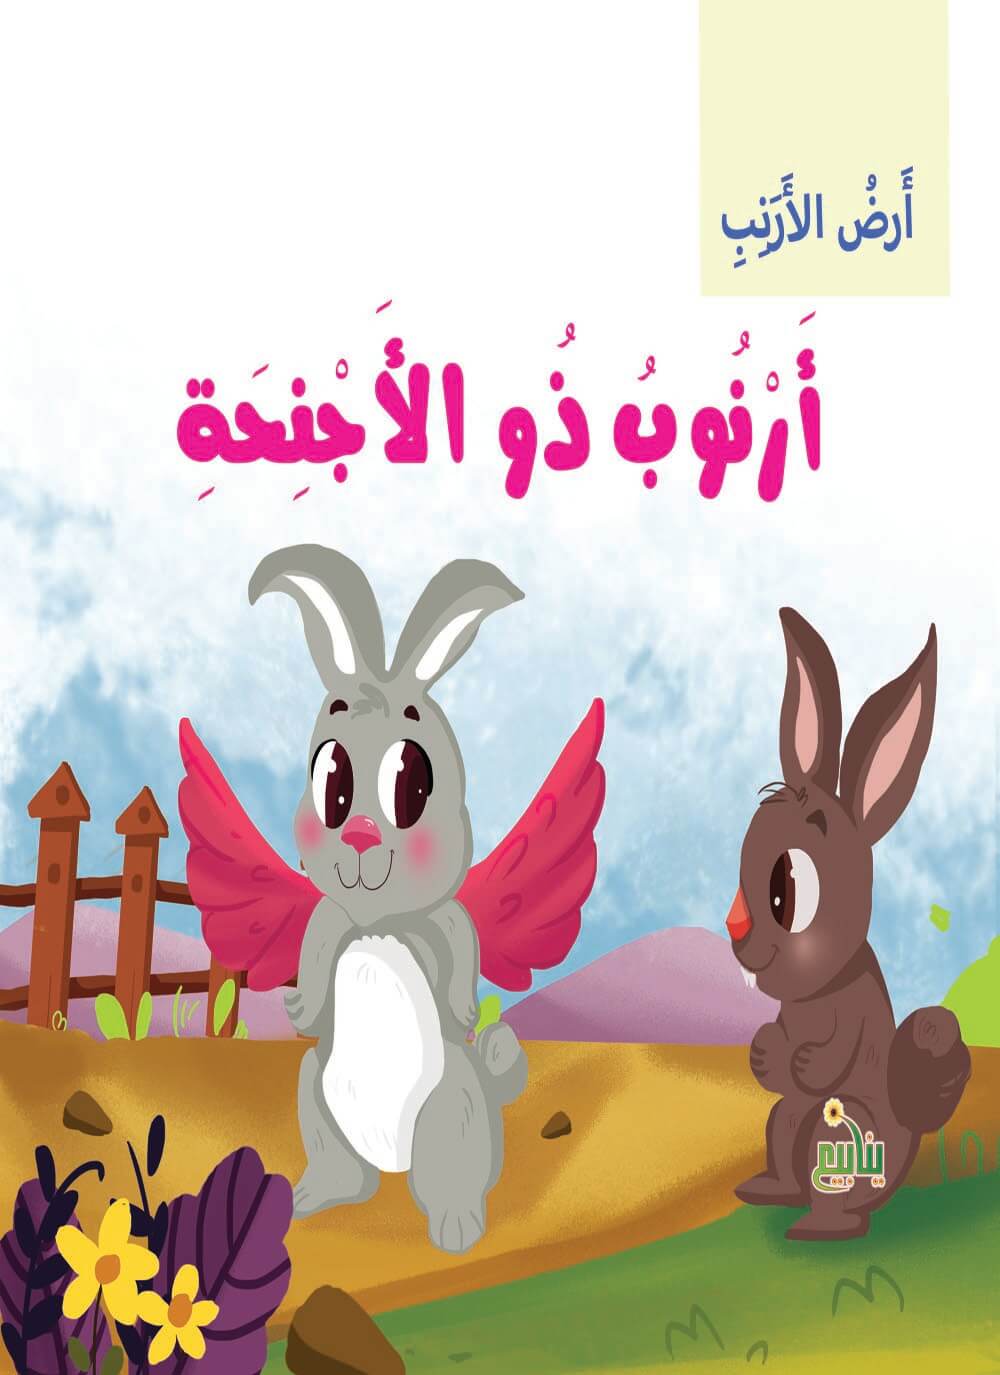 سلسلة أرض الأرانب كتب أطفال شركة ينابيع للنشر والتوزيع